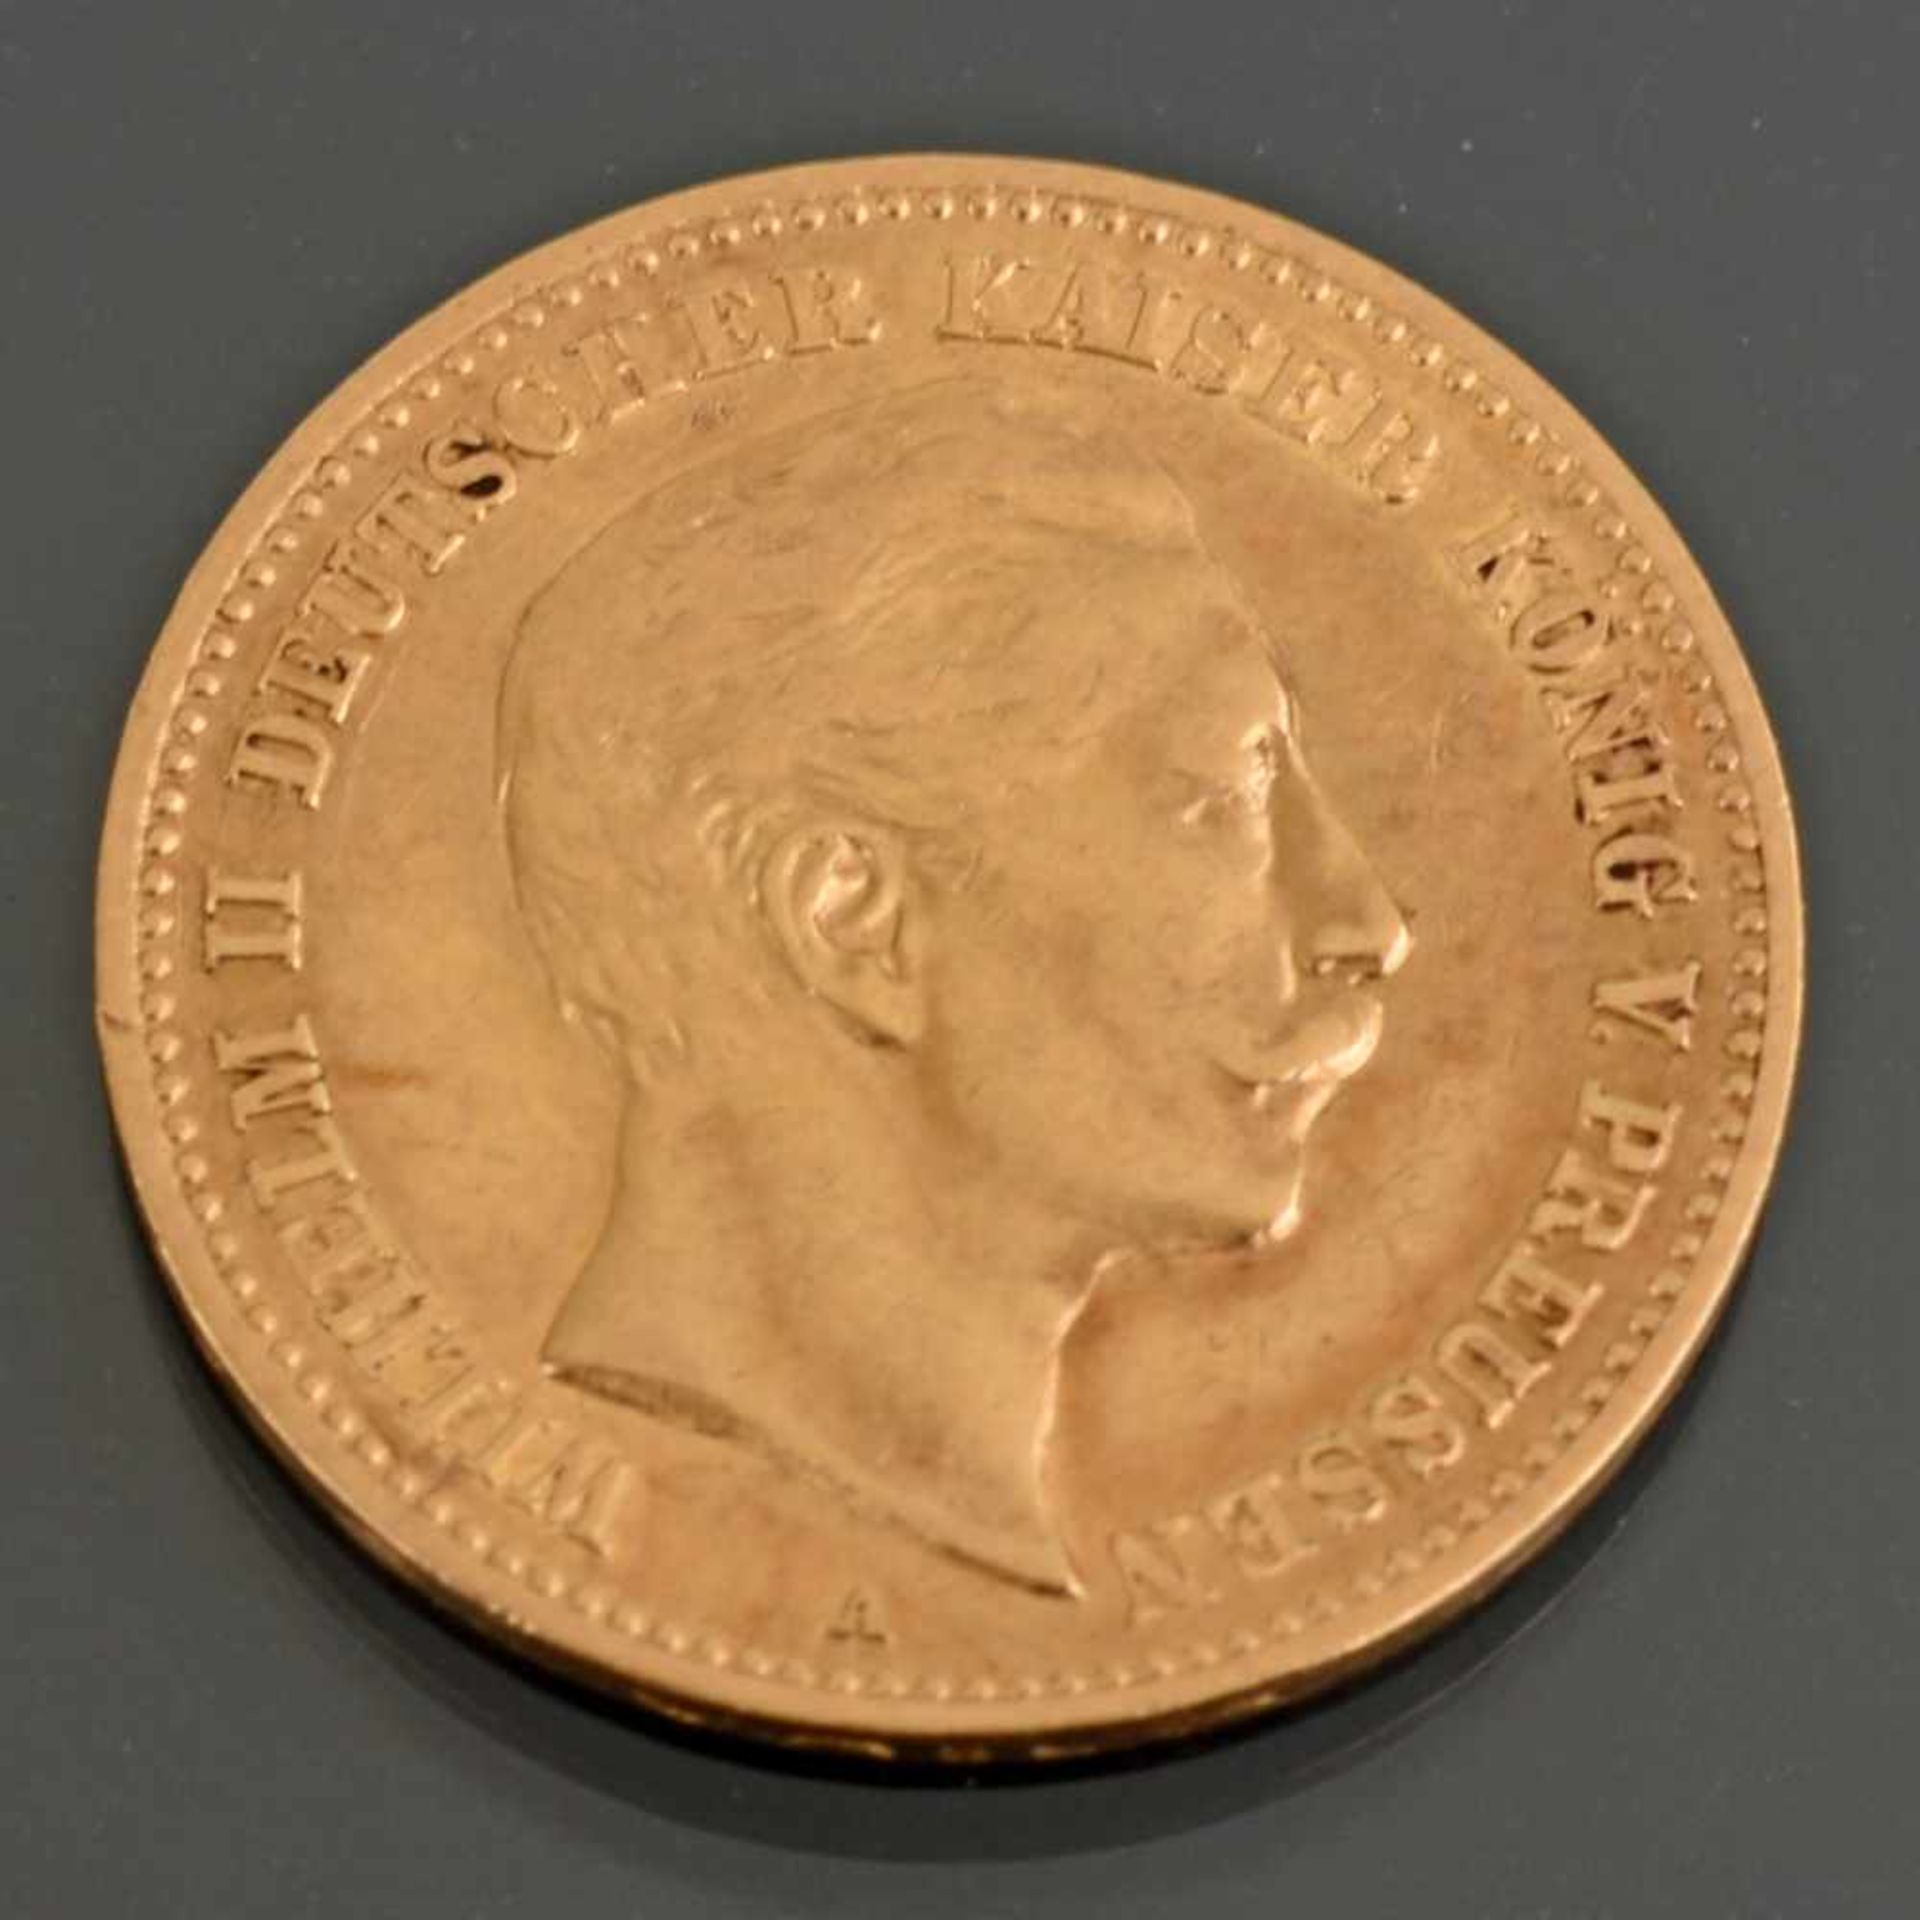 Goldmünze Kaiserreich - Preußen 1905 10 Mark in Gold, 900/1000, 3,98 g, D ca. 19,5 mm, av. Wilhelm - Image 2 of 3